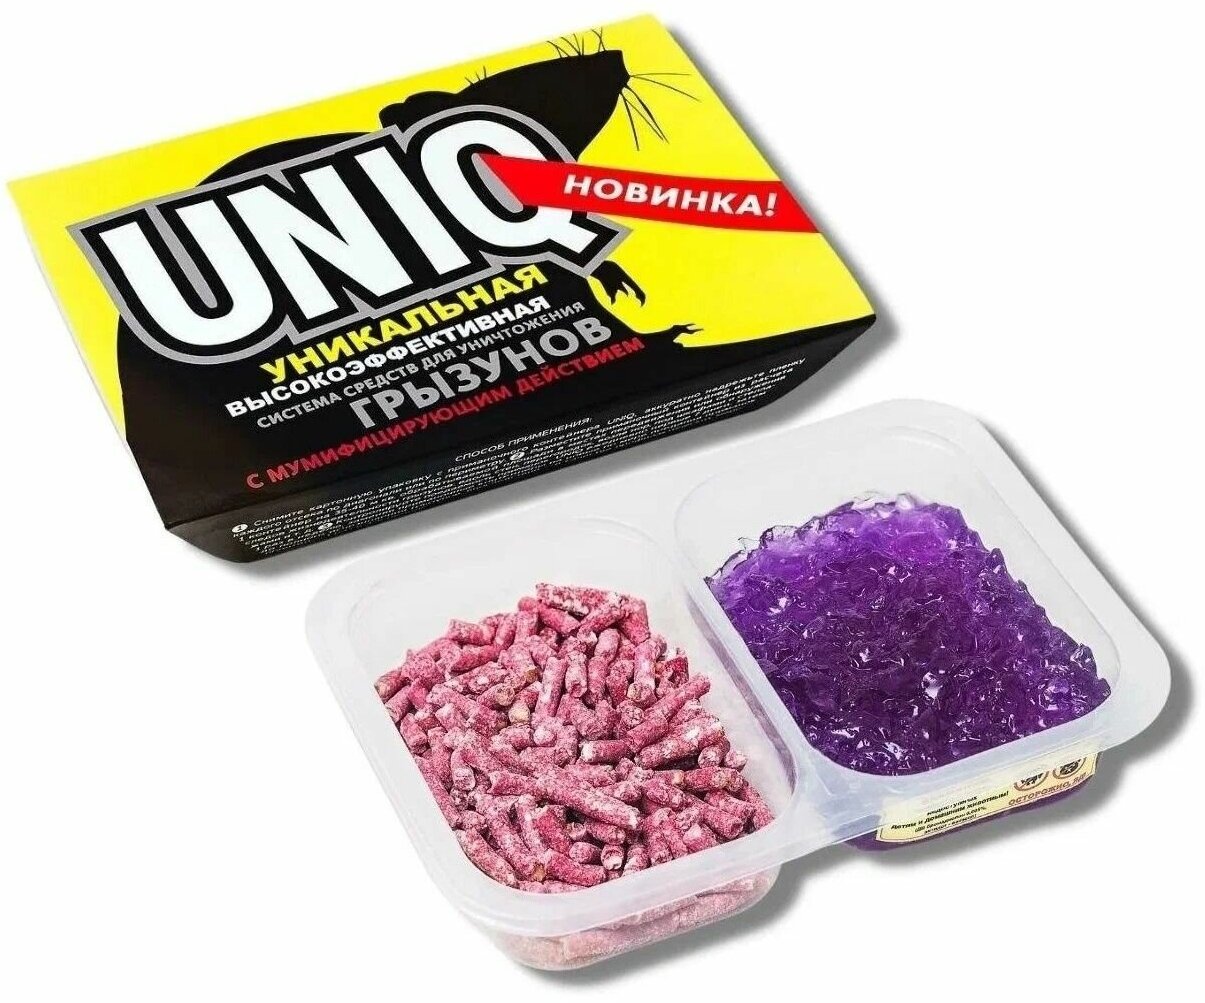 UNIQ (Уник) / Система средств против грызунов в форме геля и гранул 250 г, 2 упаковки